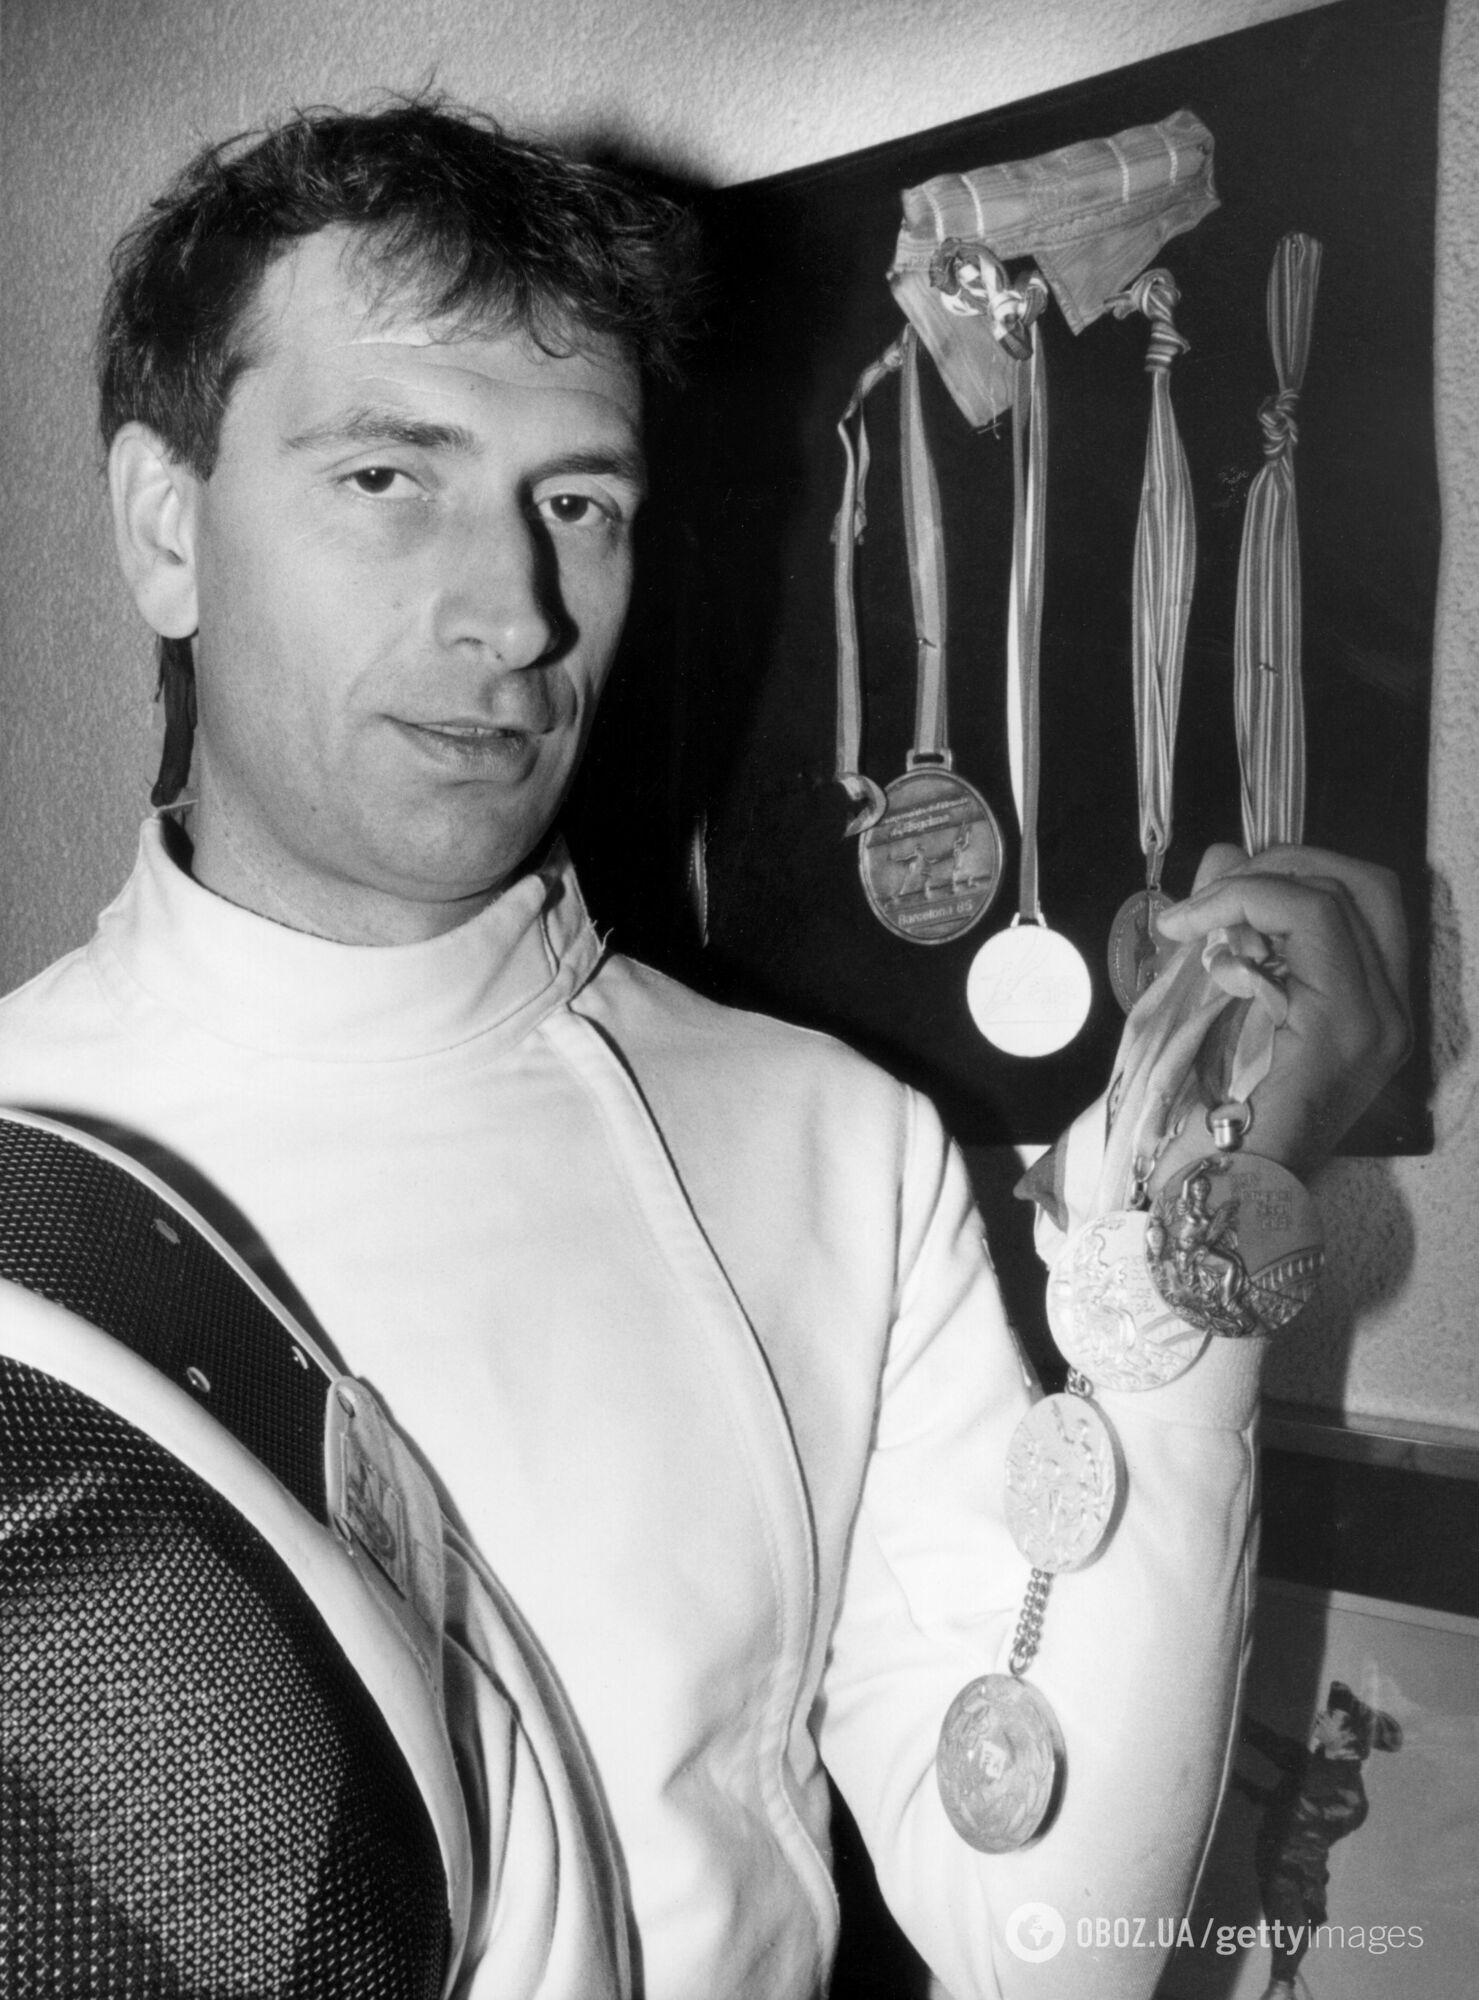 ''Уламок увійшов у мозок на 14 см'': смерть українського чемпіона на турнірі в Римі приховували у СРСР